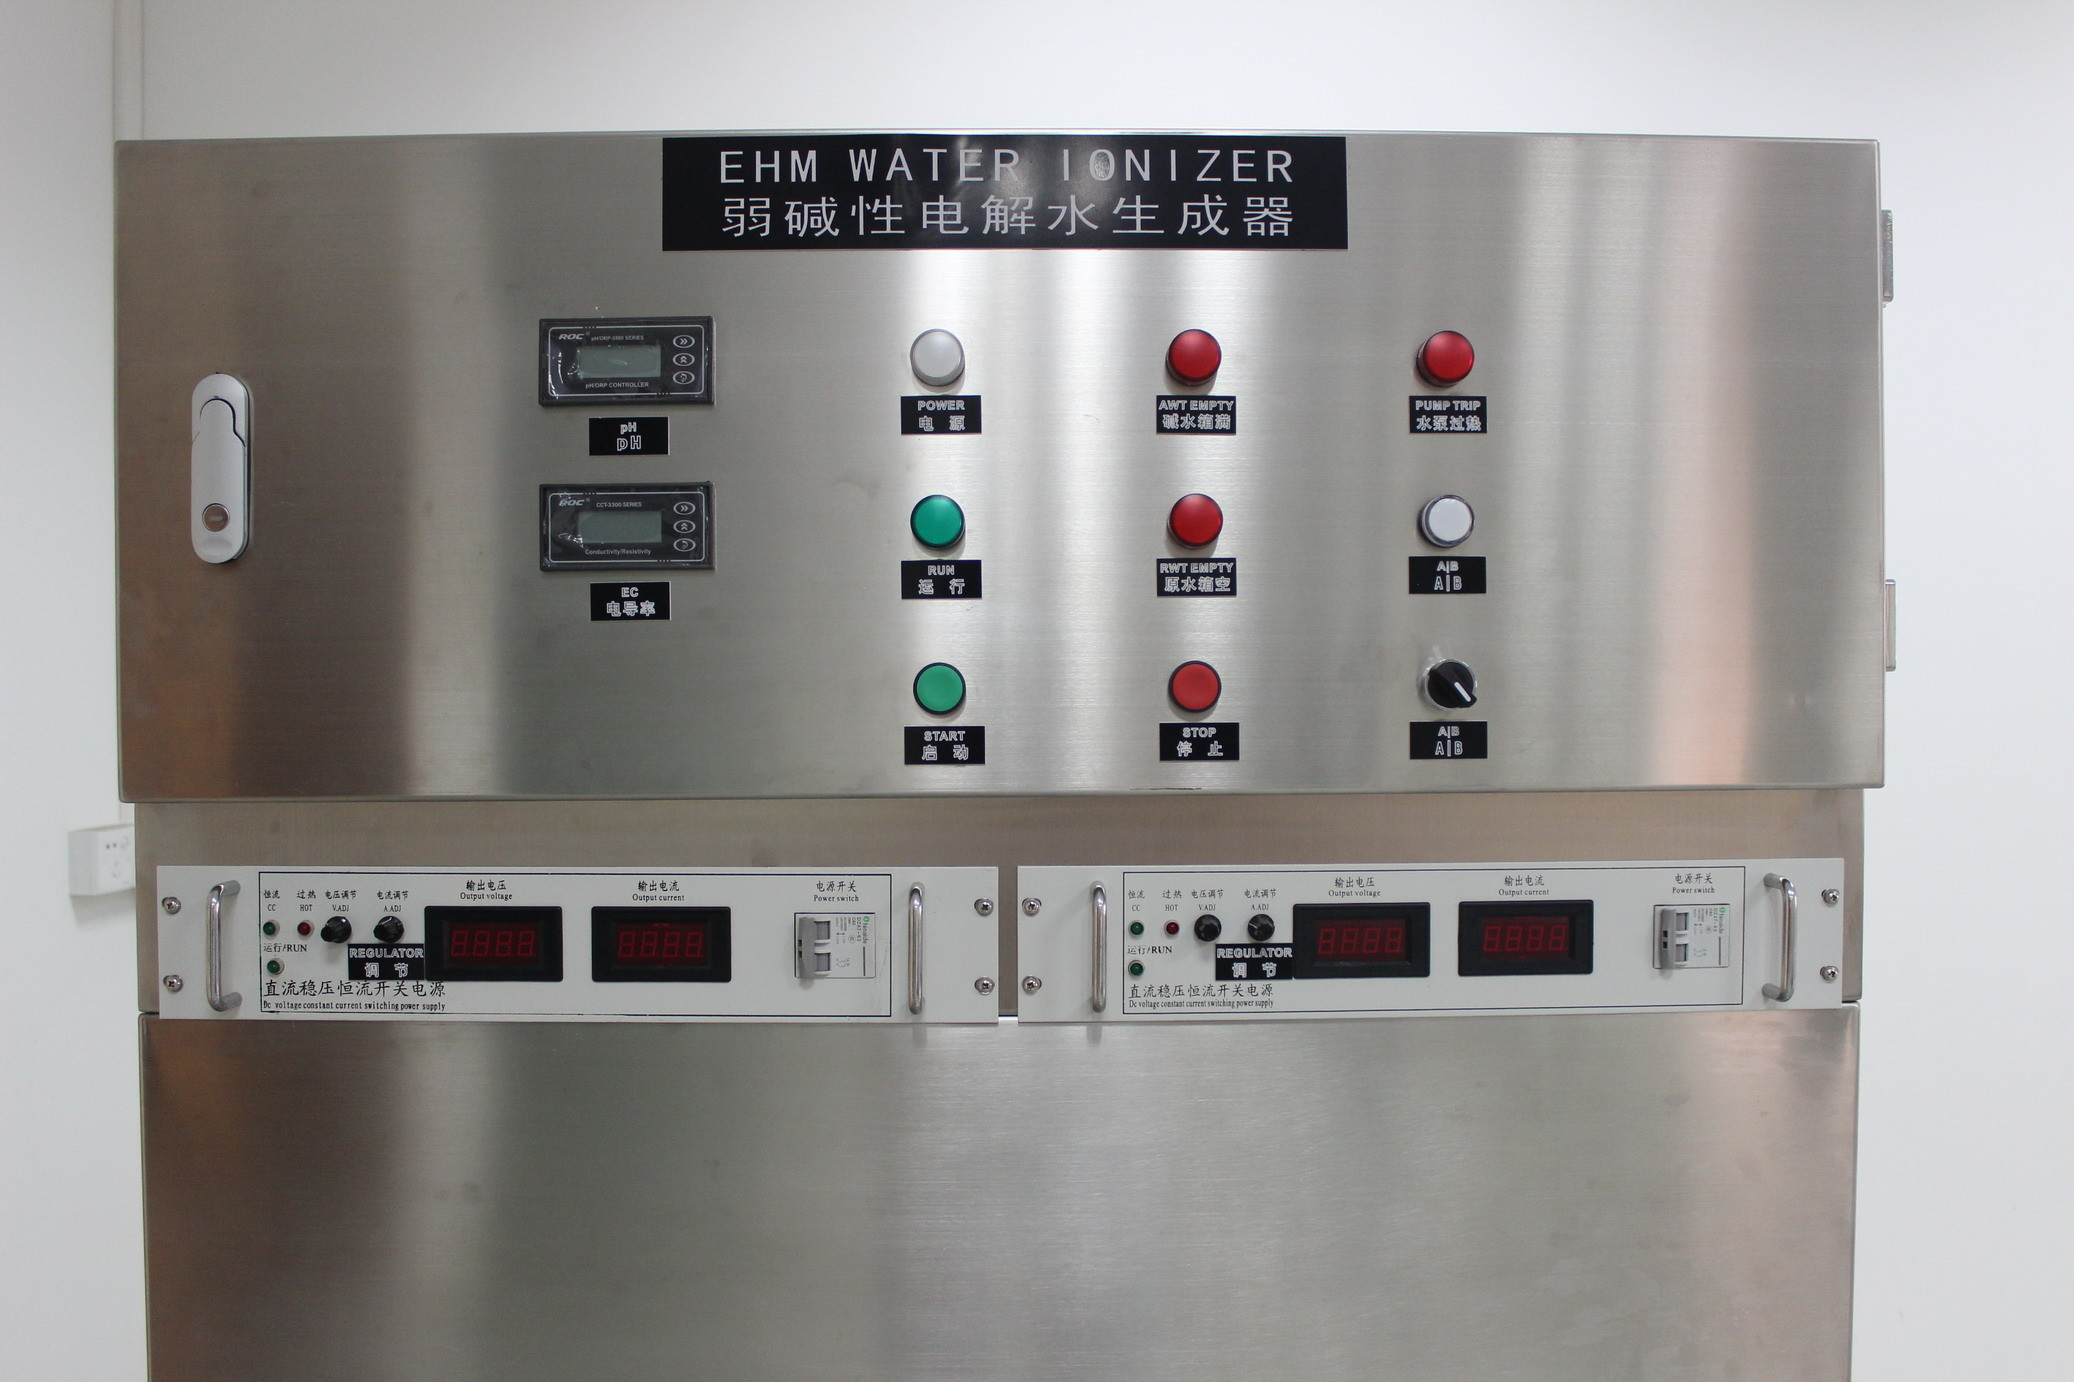 Máquina industrial del ionizador del agua produciendo el agua alcalina/ácida ionizada